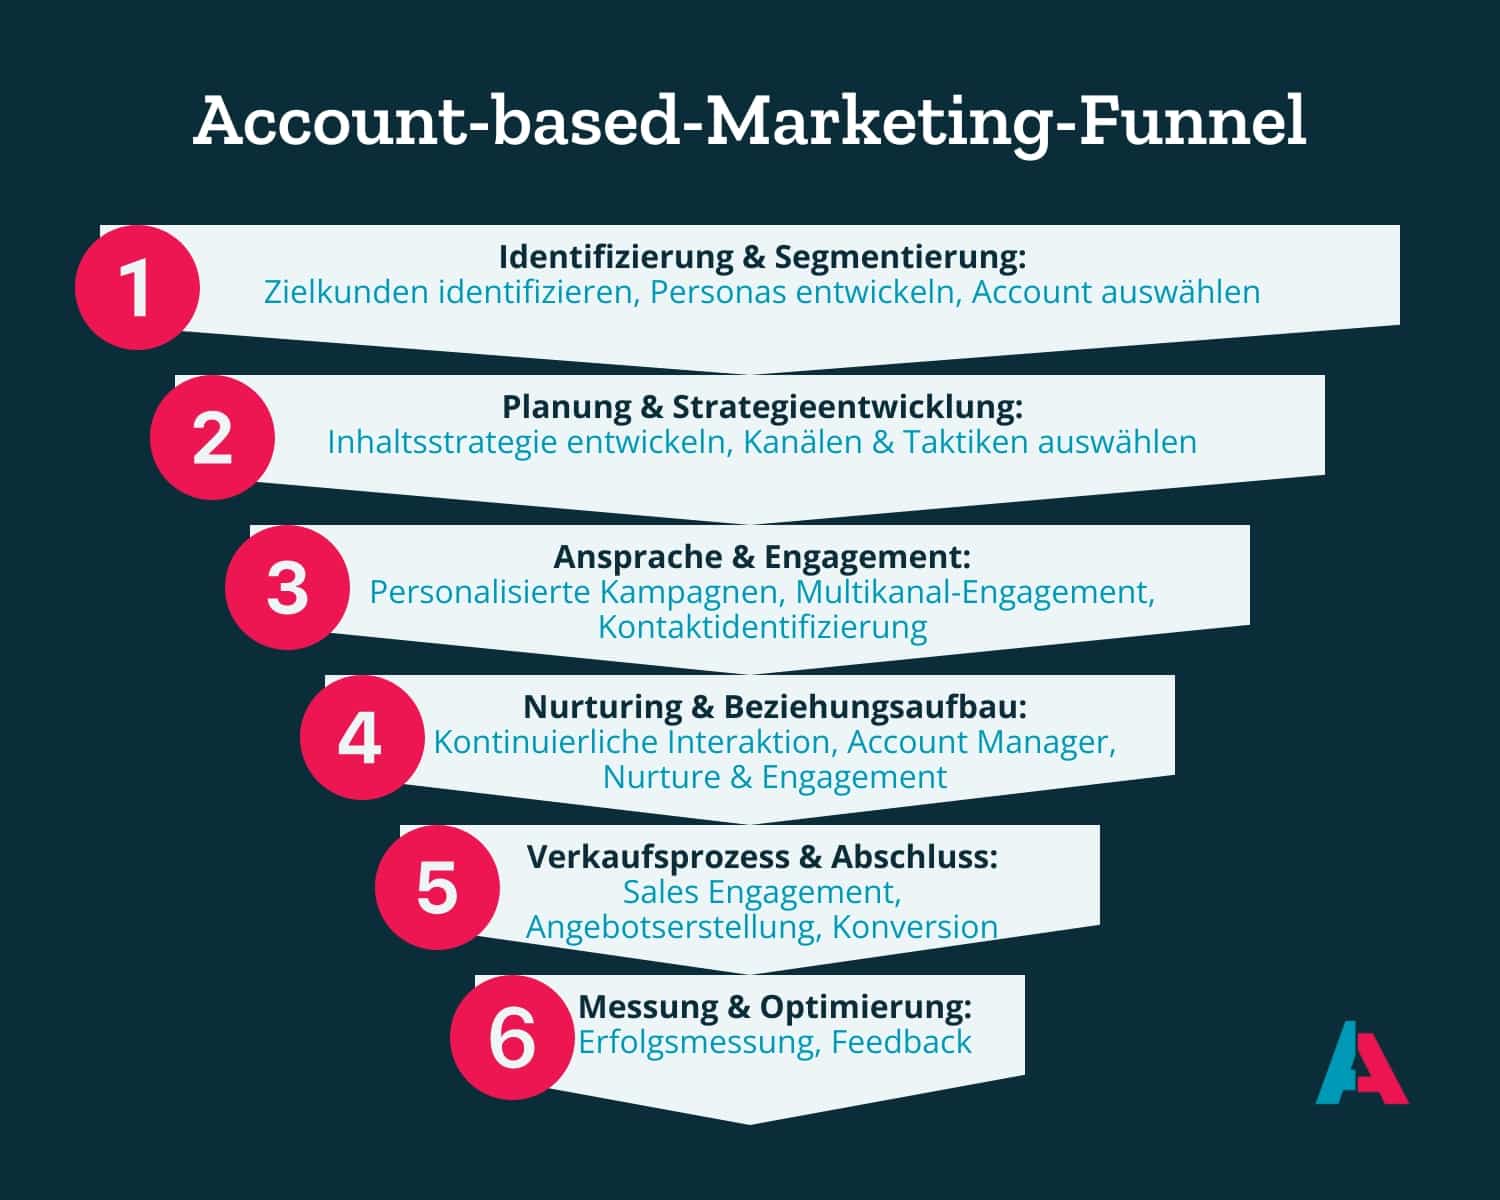 Grafische Darstellung eines Account-based-Marketing-Funnels